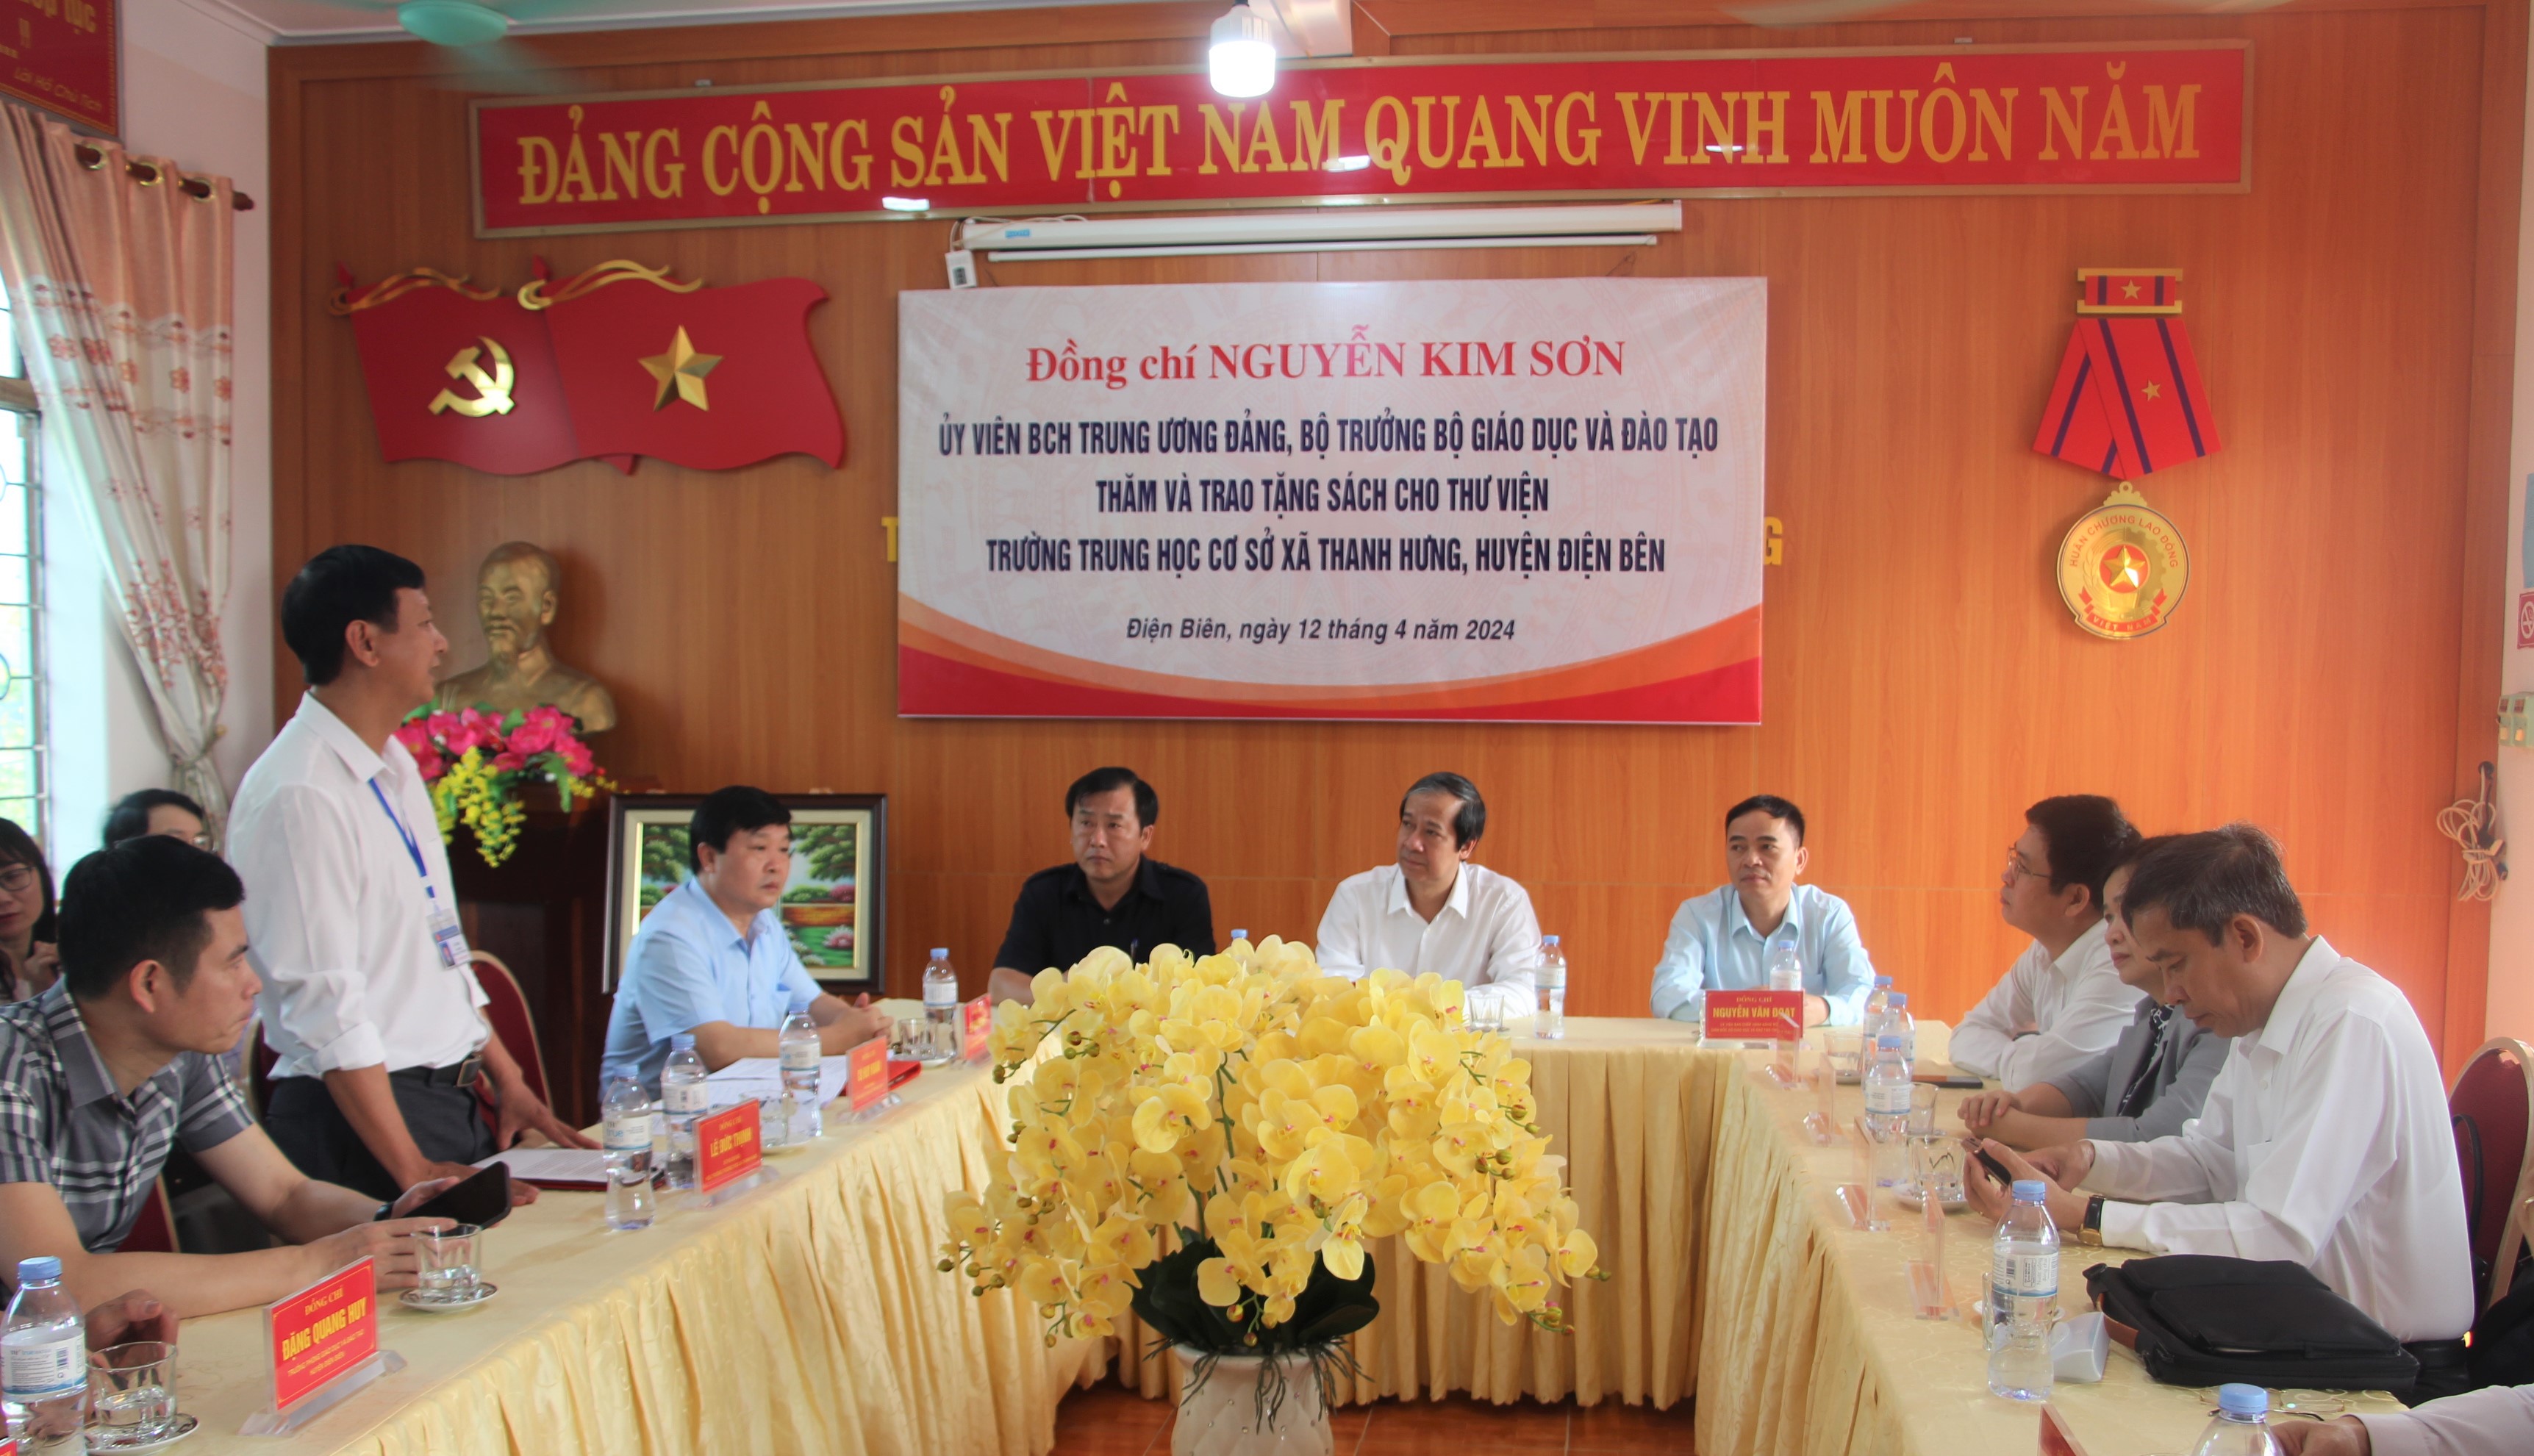 Bộ trưởng cùng đoàn công tác thăm và làm việc tại Trường THCS xã Thanh Hưng, huyện Điện Biên.